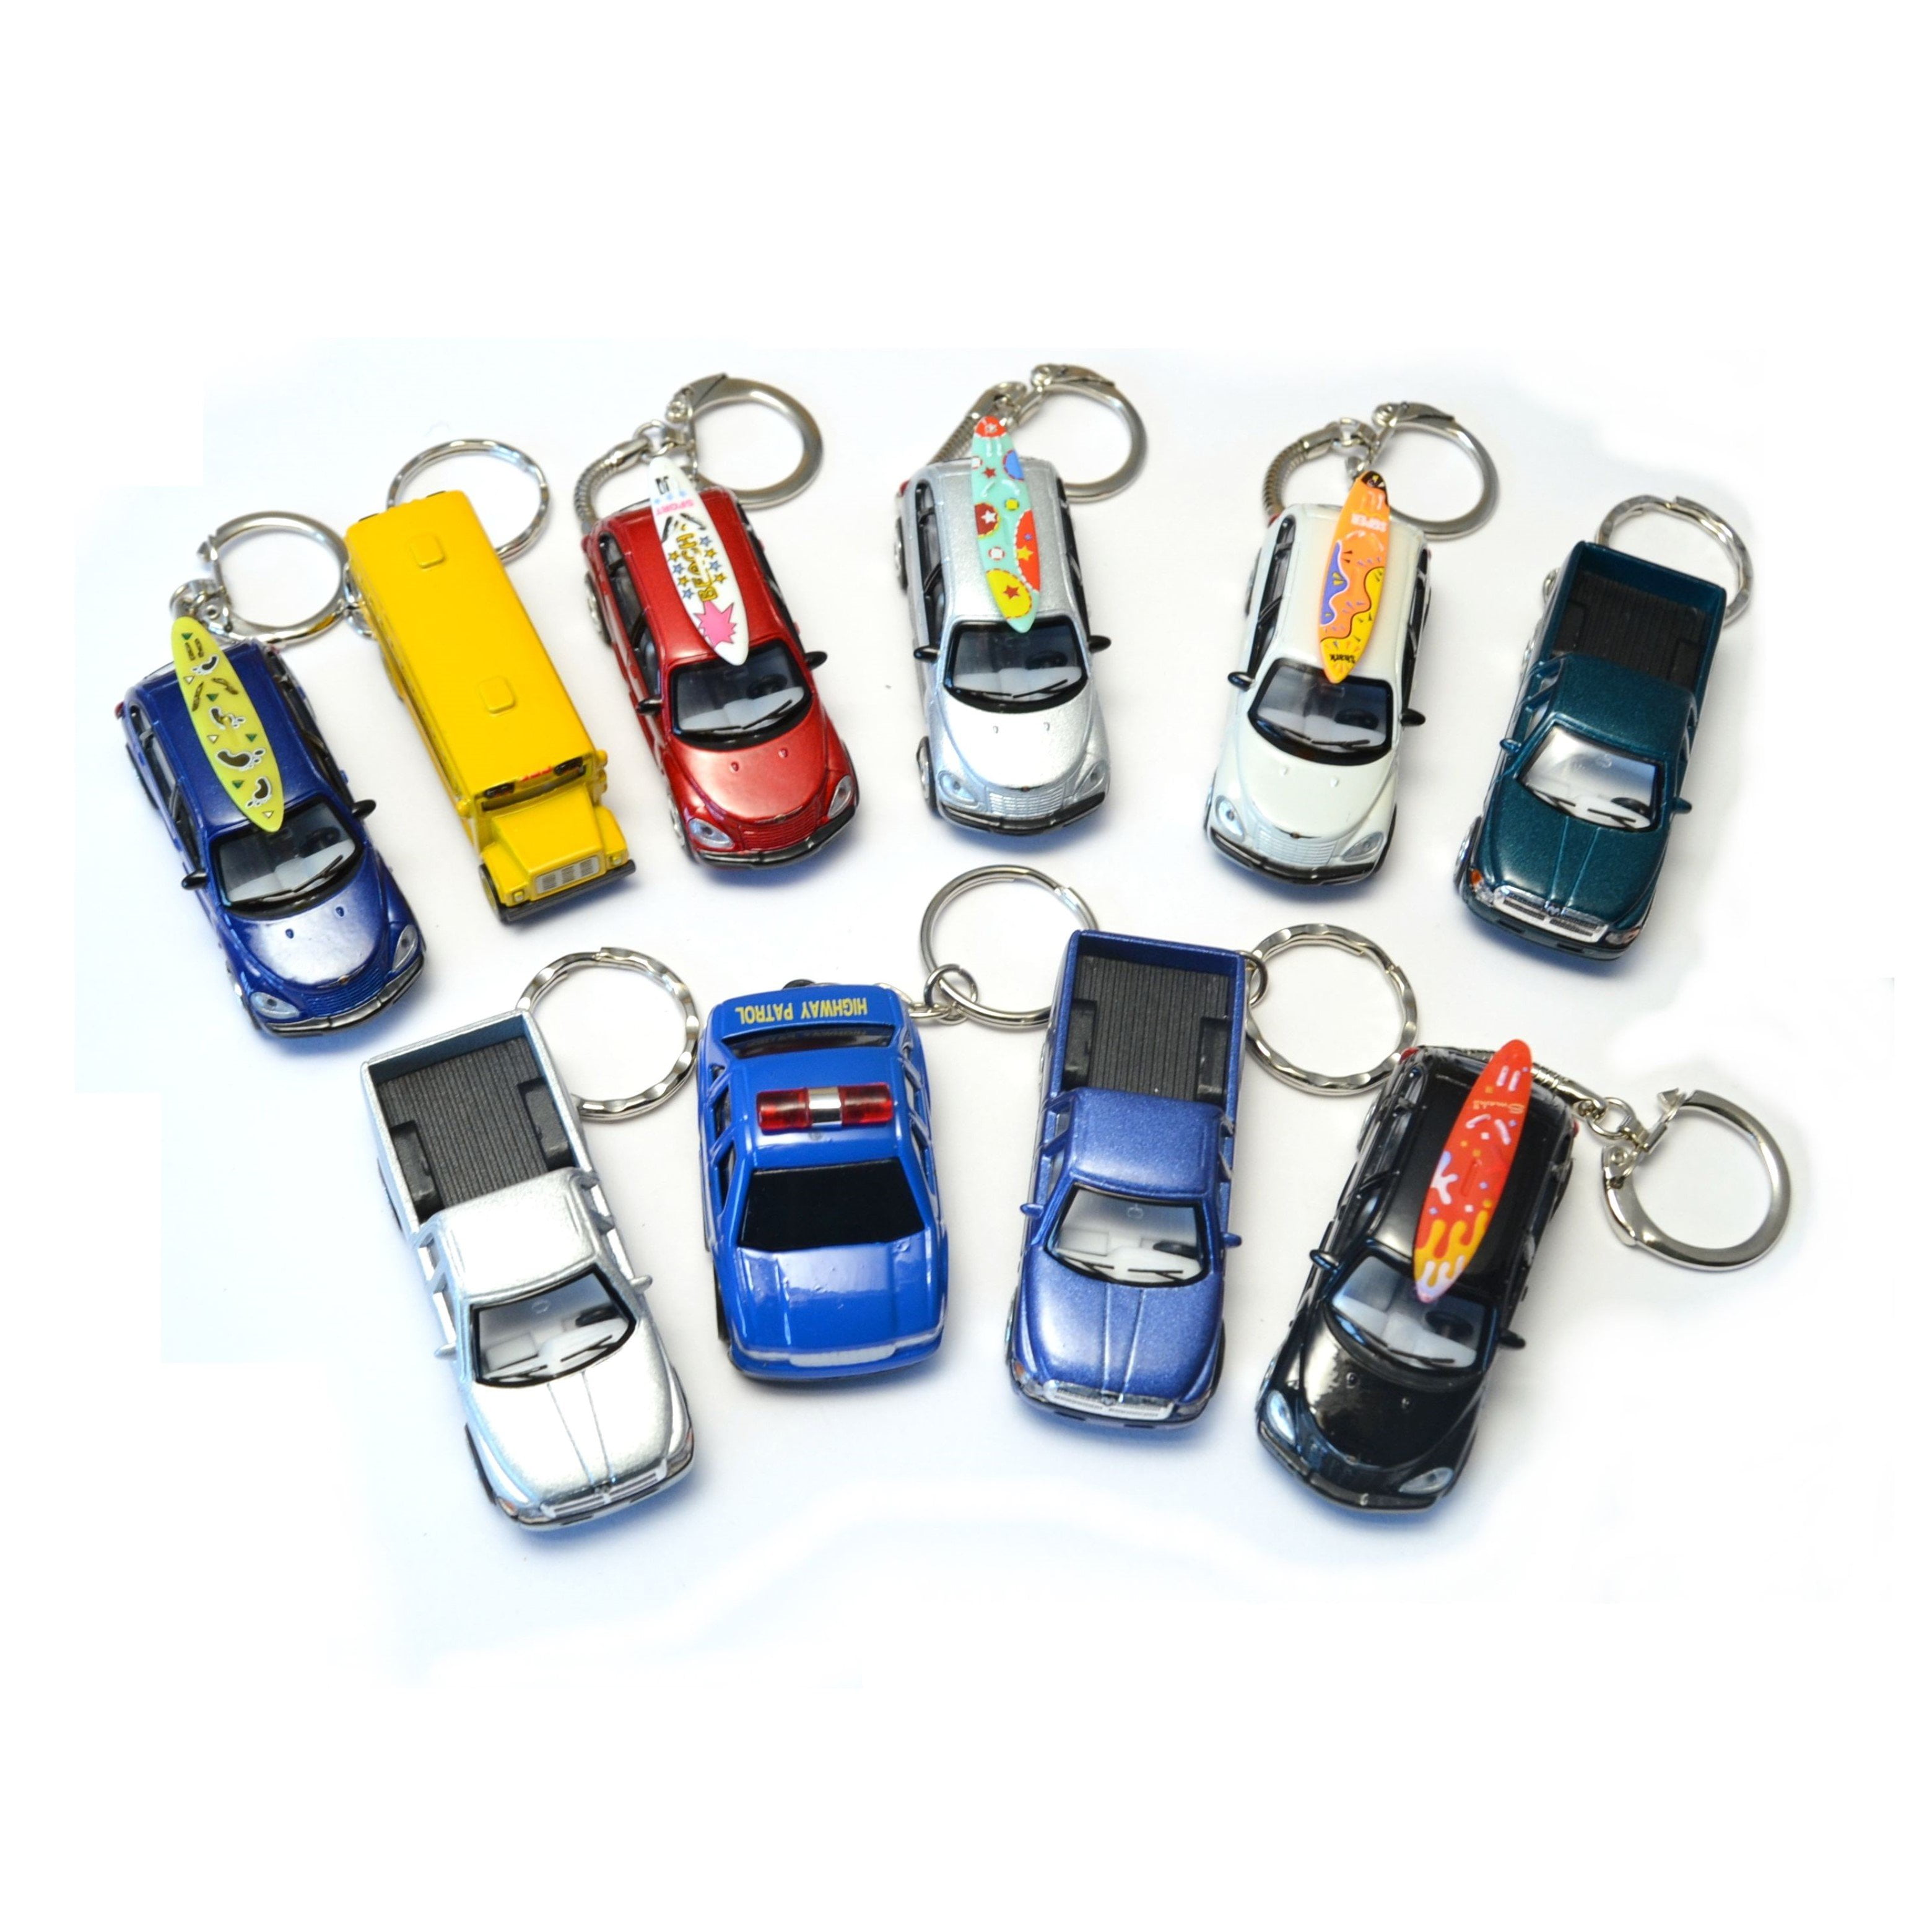 Key Tags with Rings 15pcs Key Tag Key Rings for Car Keys Key Chains for Car  Keys Car Keys Keychain Suitcase Holder Key Ring Tags Multi-Purpose Key Tags  KeyTags Key Id Tags 